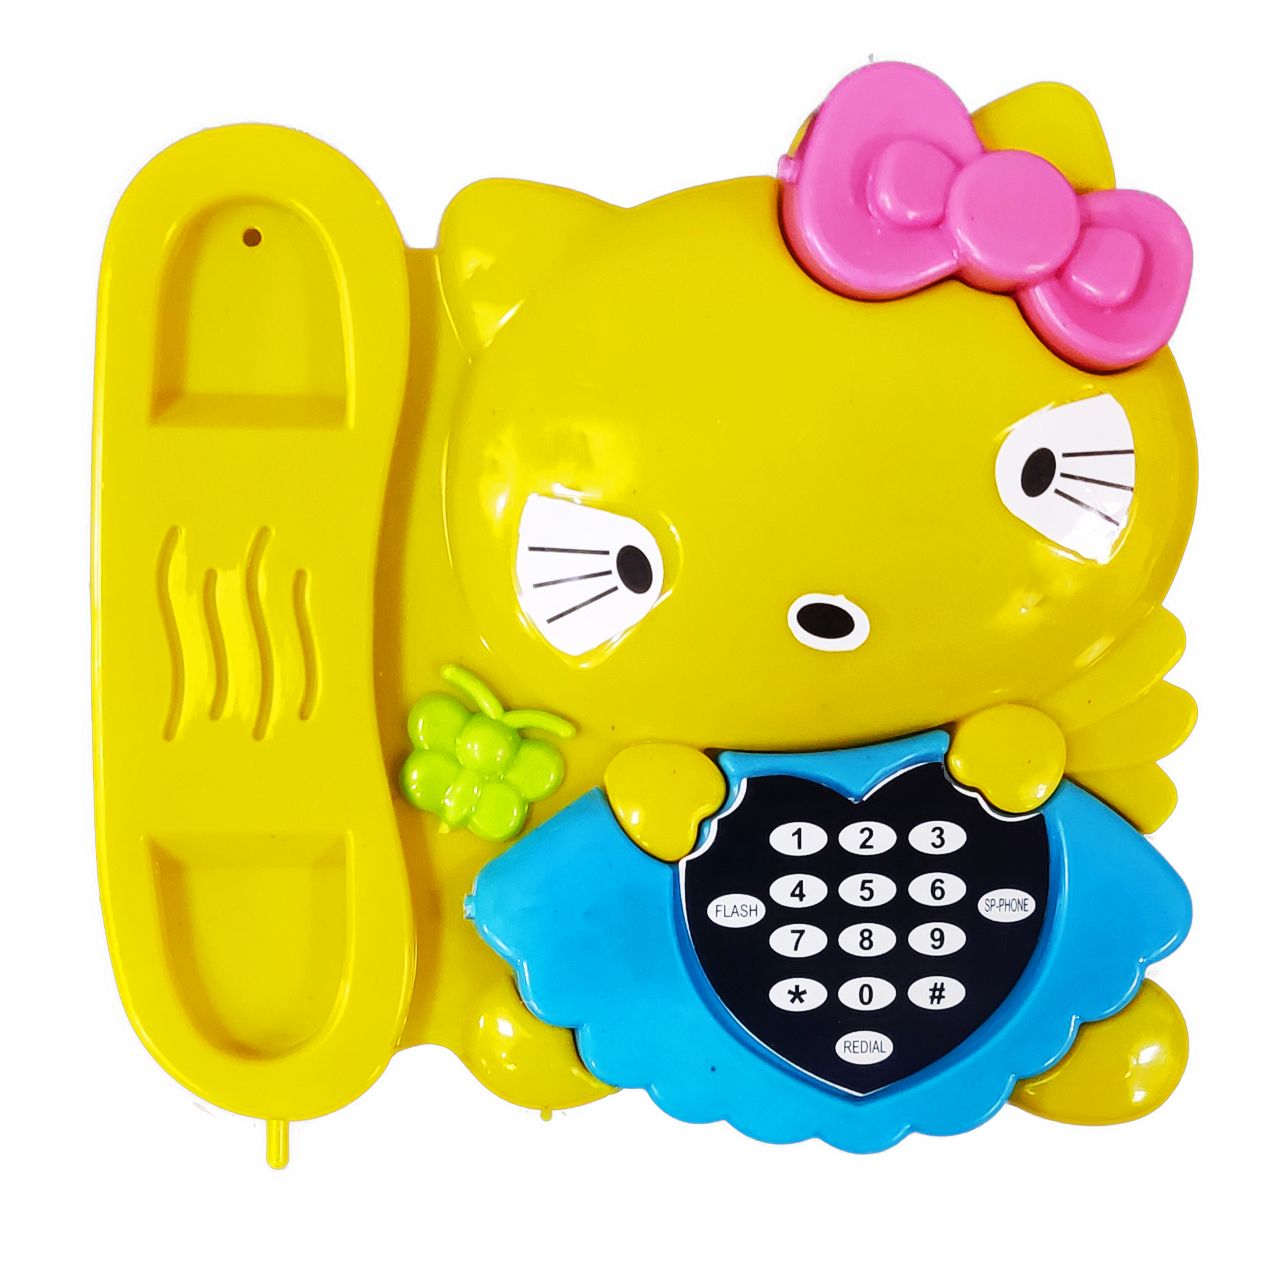 اسباب بازی مدل تلفن کیتی کد 9856 -  - 2